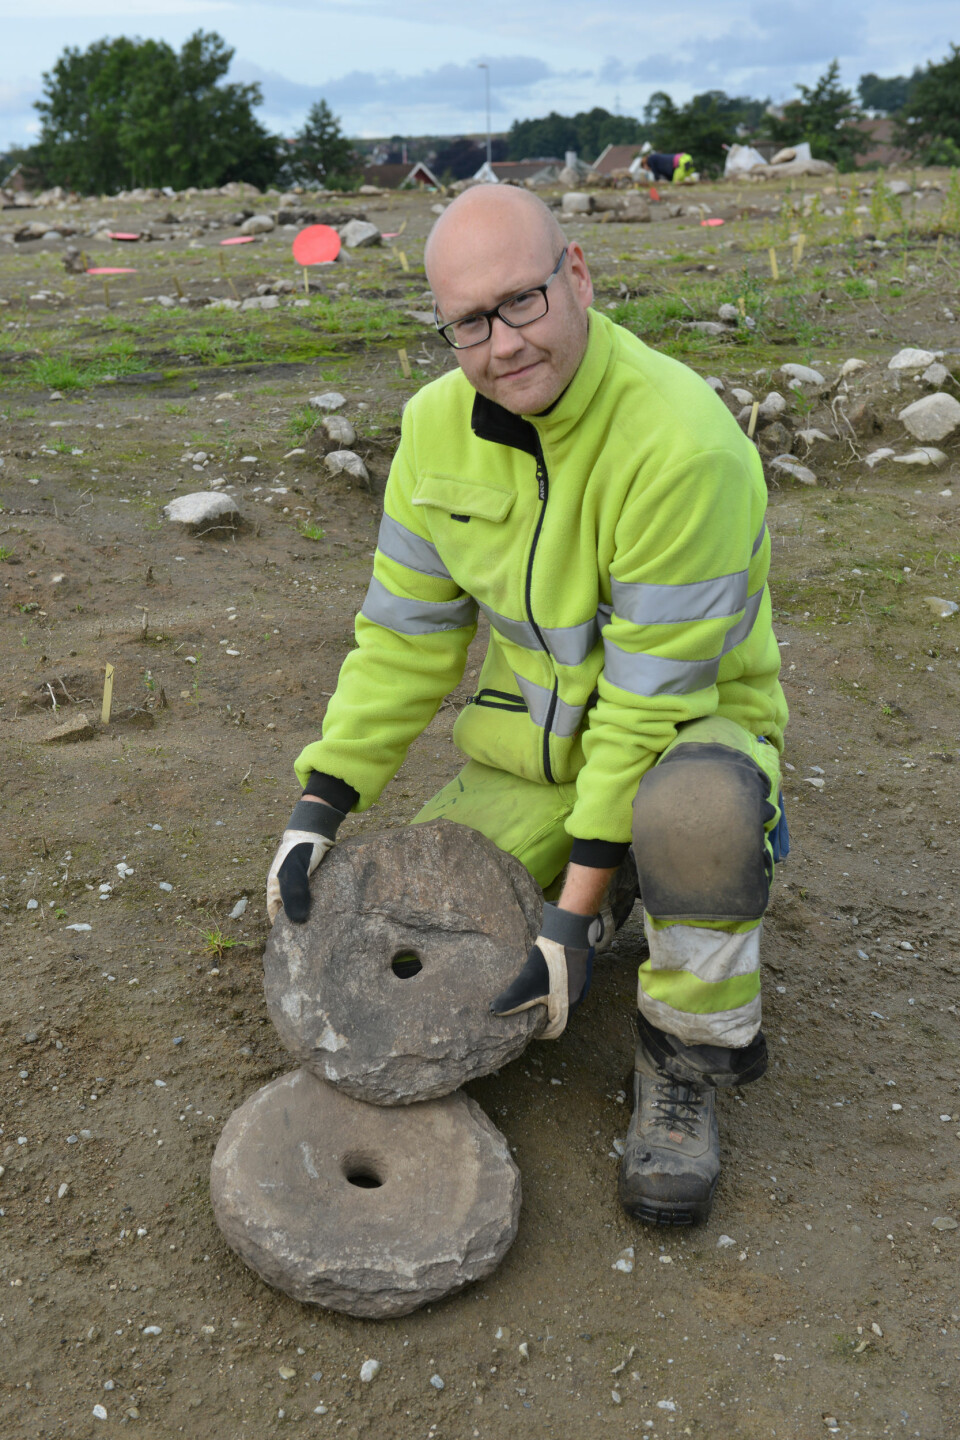 Even Bjørdal, arkeolog ved Arkeologisk museum, UiS, viser fram dreiekvernen som ble funnet på Hove i Sandnes i sommer. Den ble funnet helt intakt, noe som er svært sjeldent. (Foto: Asbjørn Jensen, UiS)